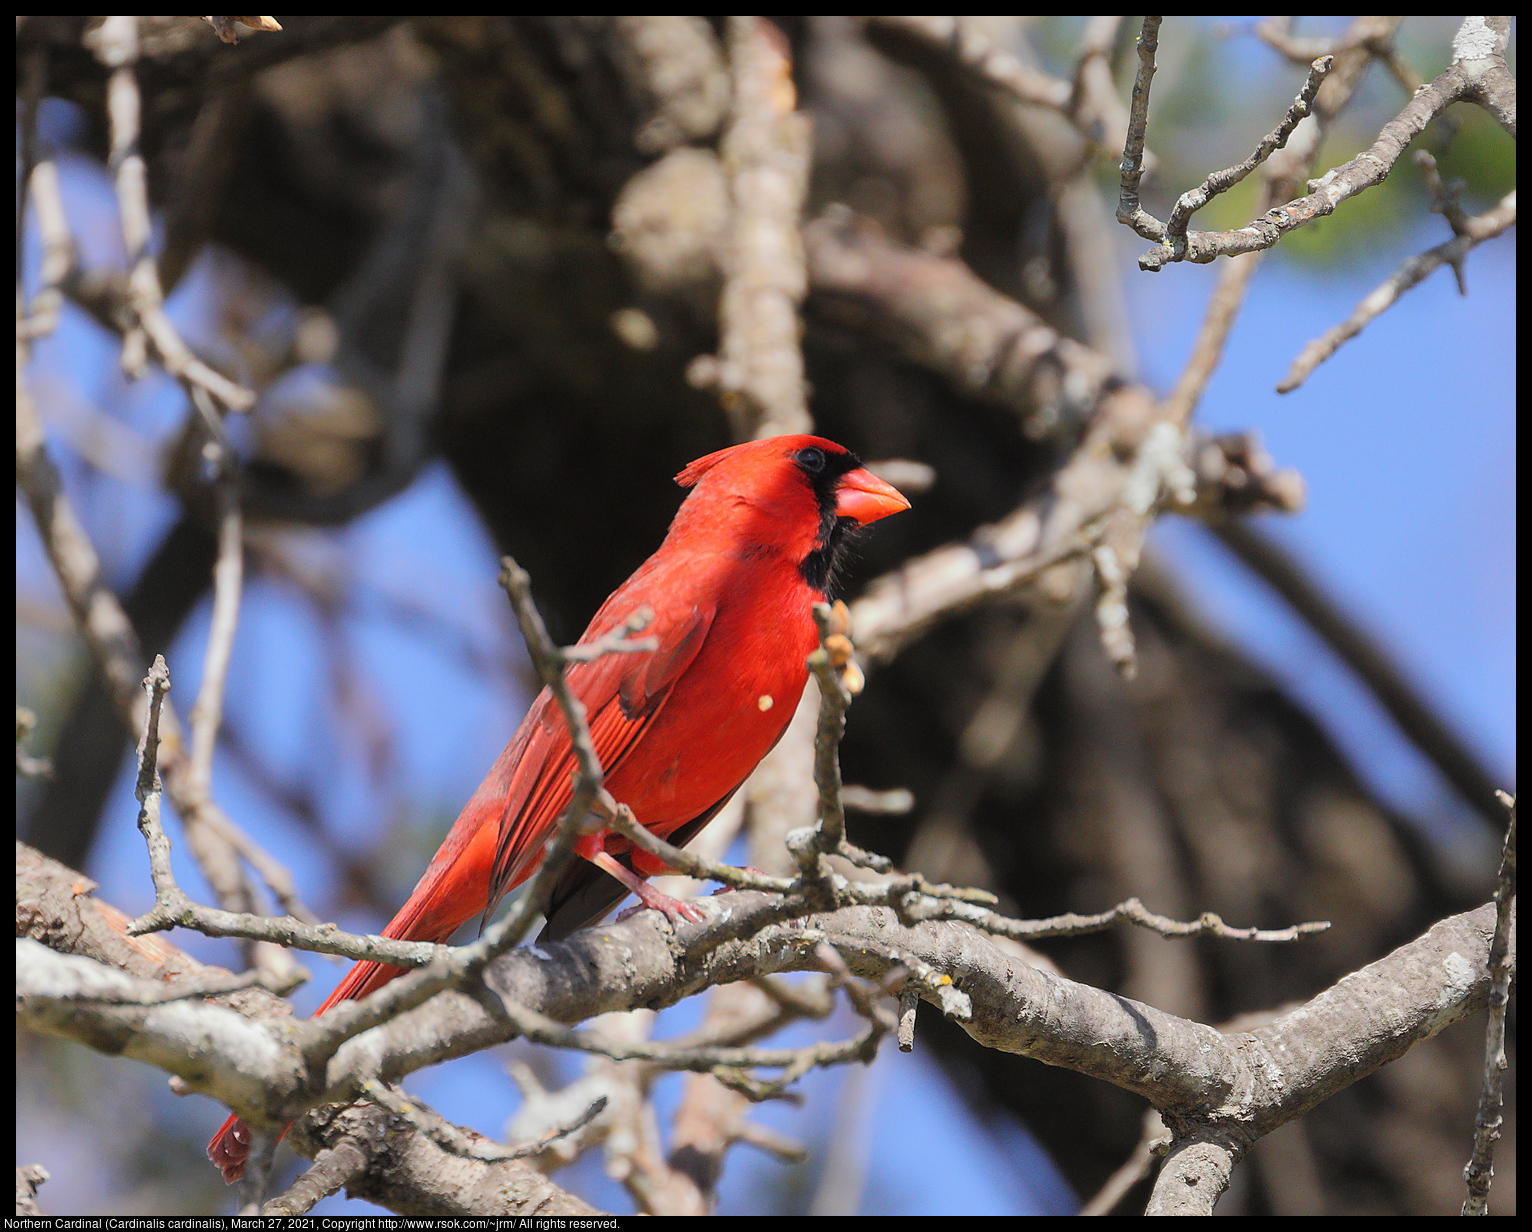 Northern Cardinal (Cardinalis cardinalis), March 27, 2021